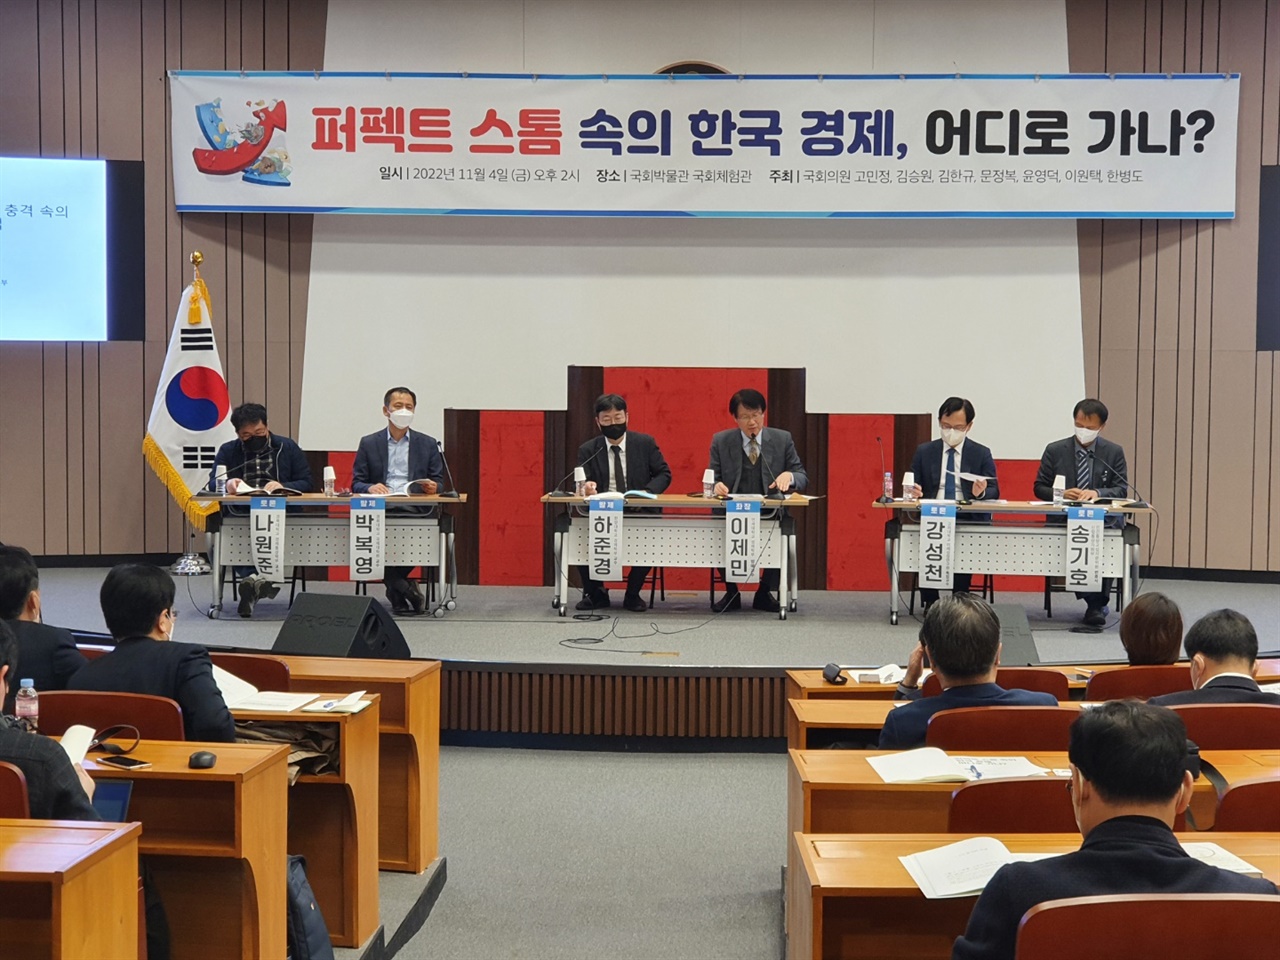 11월 4일 오후국회도서관 대강당에서 여러 국회의원들의 공동 주최로 경제전문가들과 많은 청중들이 참여한 가운데 "퍼펙트 스톰 속 한국 경제, 어디로 가나?"라는 주제로 토론회가 개최되었다.